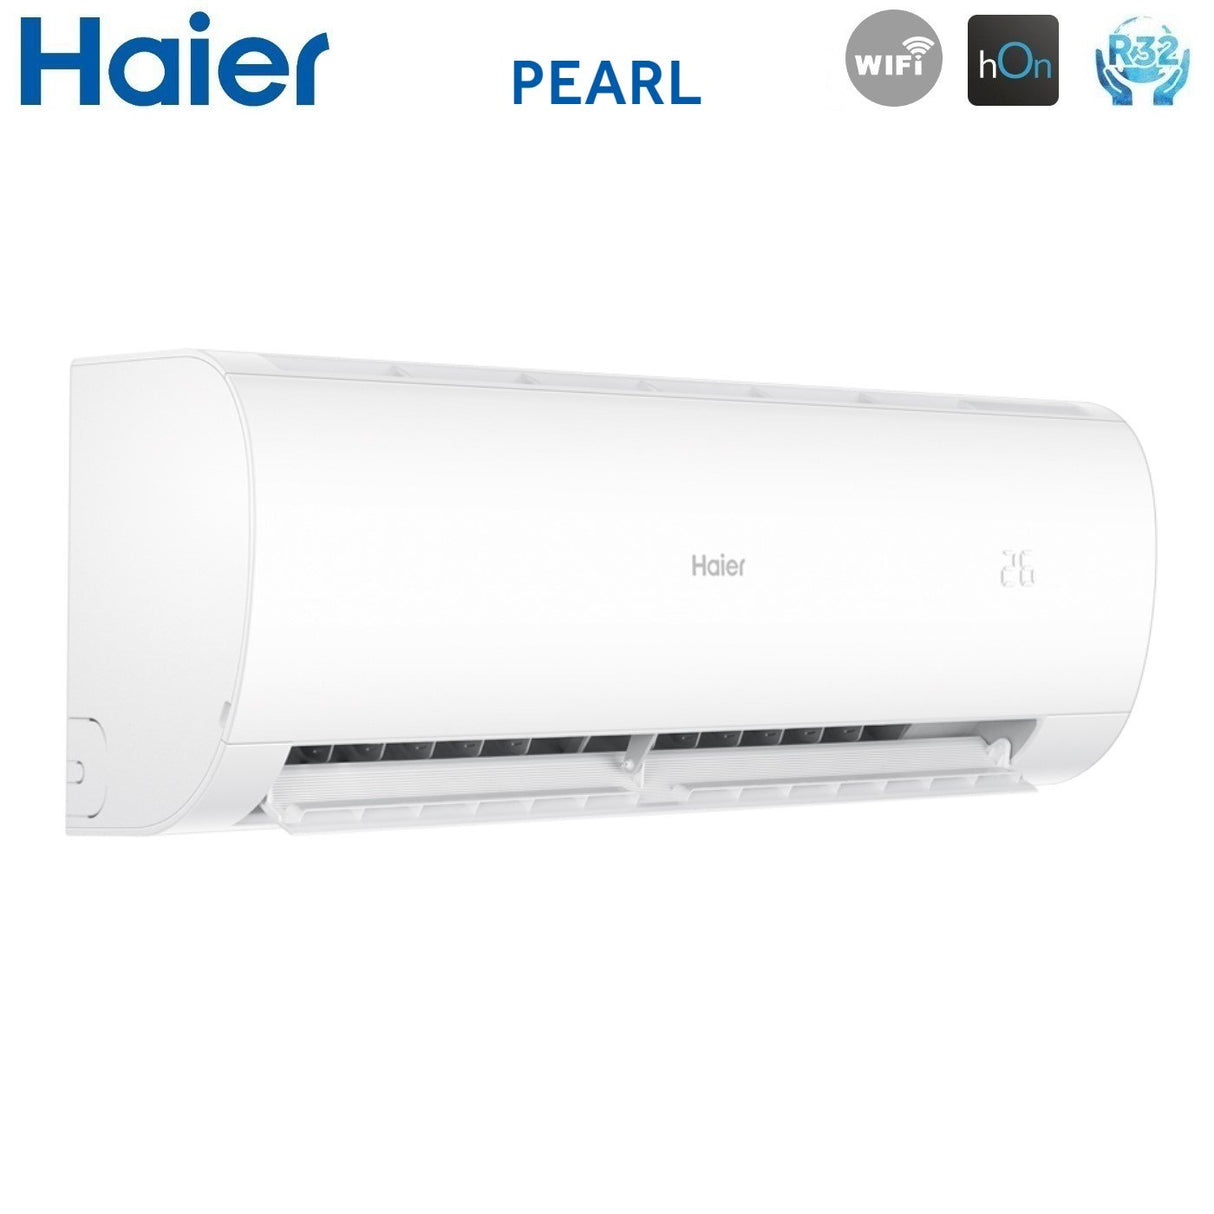 immagine-4-haier-climatizzatore-condizionatore-haier-trial-split-inverter-serie-pearl-9912-con-3u70s2sr3fa-r-32-wi-fi-integrato-9000900012000-novita